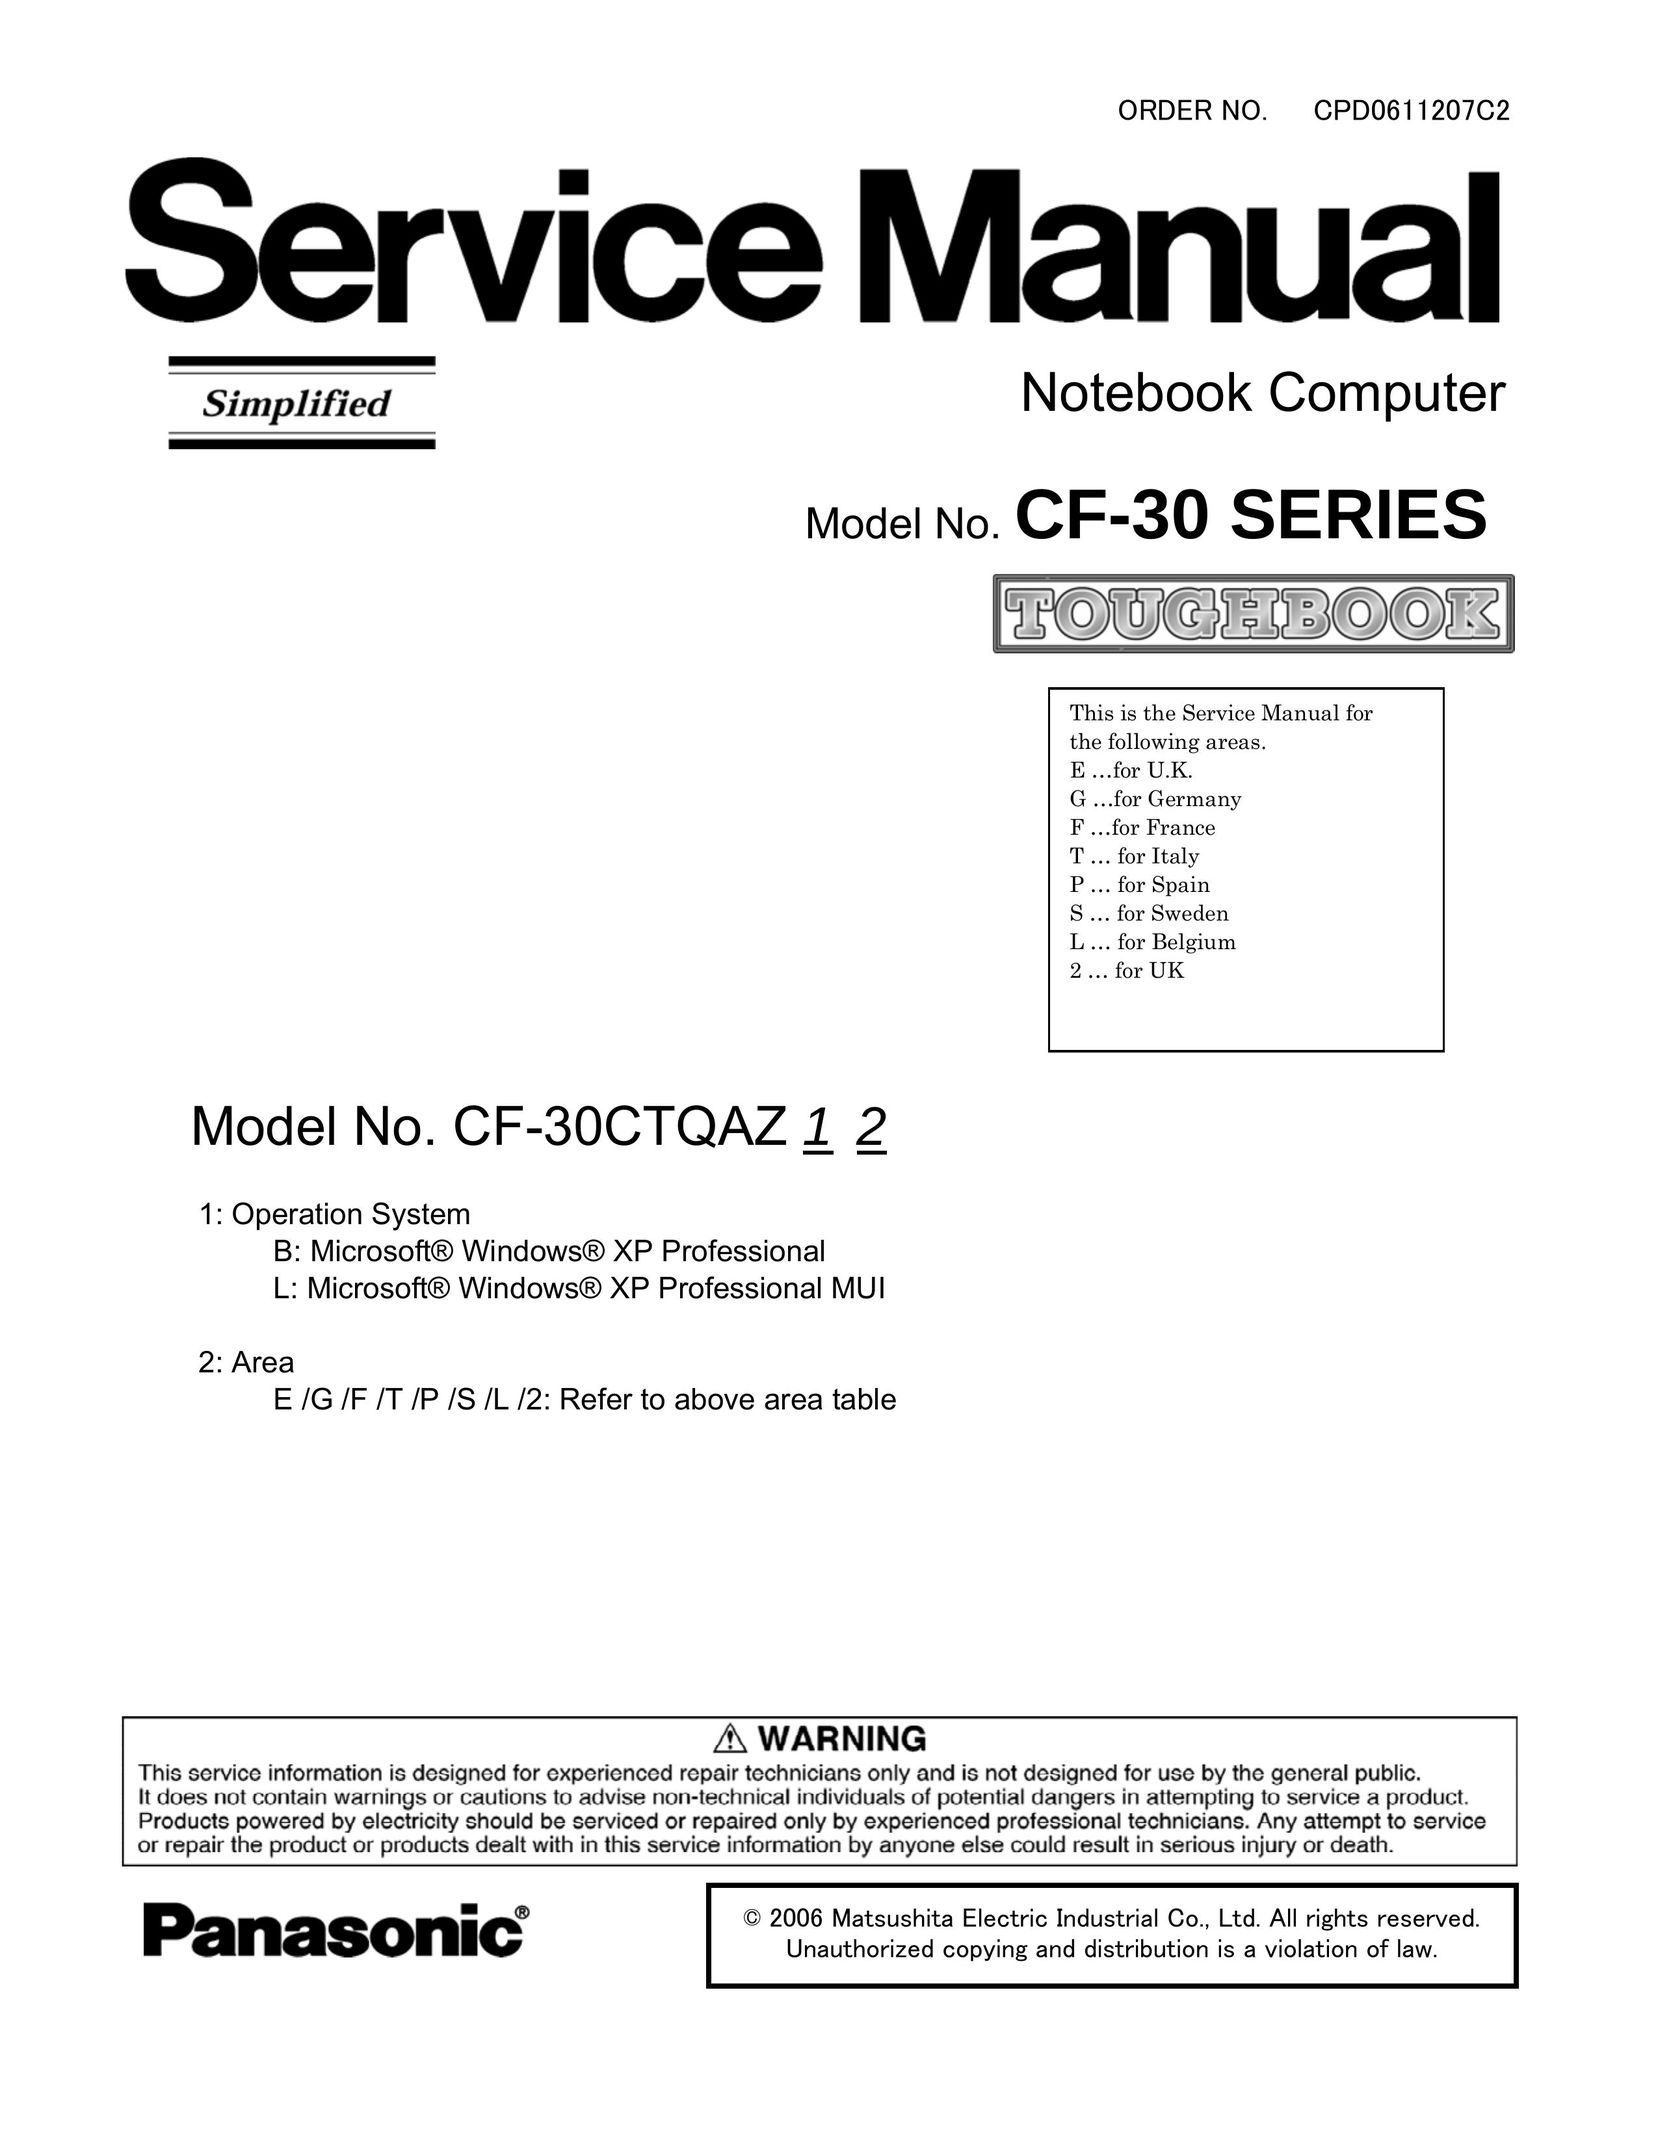 Matsushita CF-30 Laptop User Manual